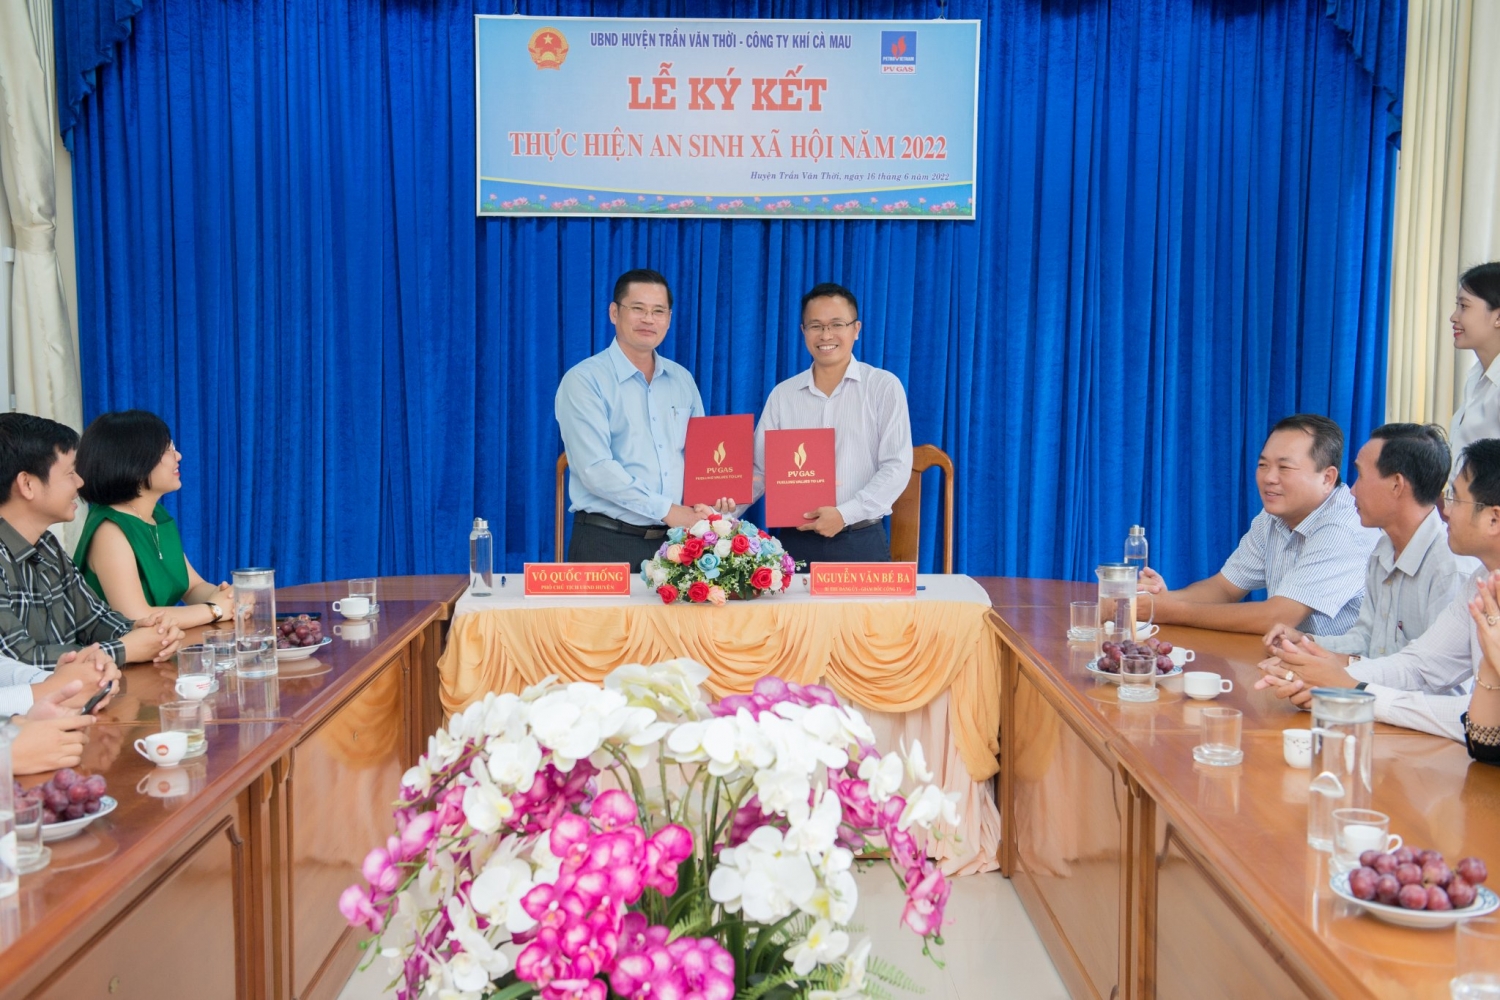 Công ty Khí Cà Mau cùng với UBND huyện Trần Văn Thời, tỉnh Cà Mau đã tiến hành tổ chức buổi Lễ ký kết thực hiện chương trình an sinh xã hội năm 2022 